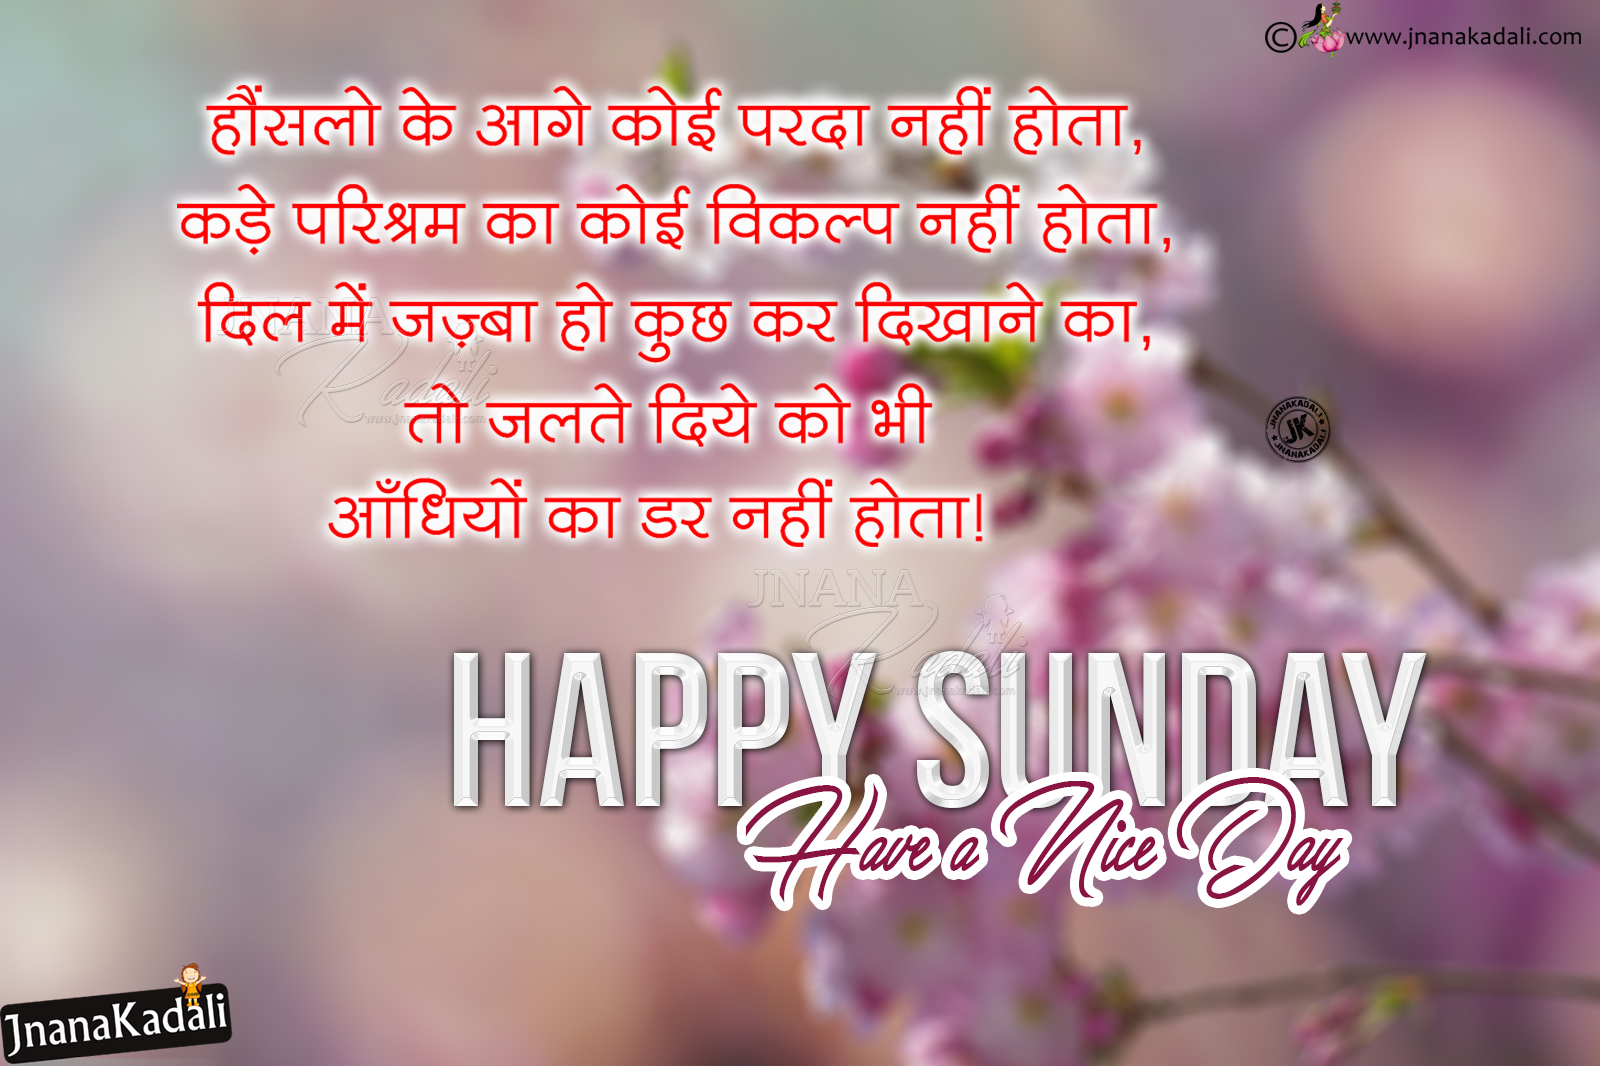 Happy Sunday Good Morning Quotes Hd Wallpapers In Hindi | Jnana Kadali.com |Telugu Quotes|English Quotes|Hindi Quotes|Tamil Quotes|Dharmasandehalu|